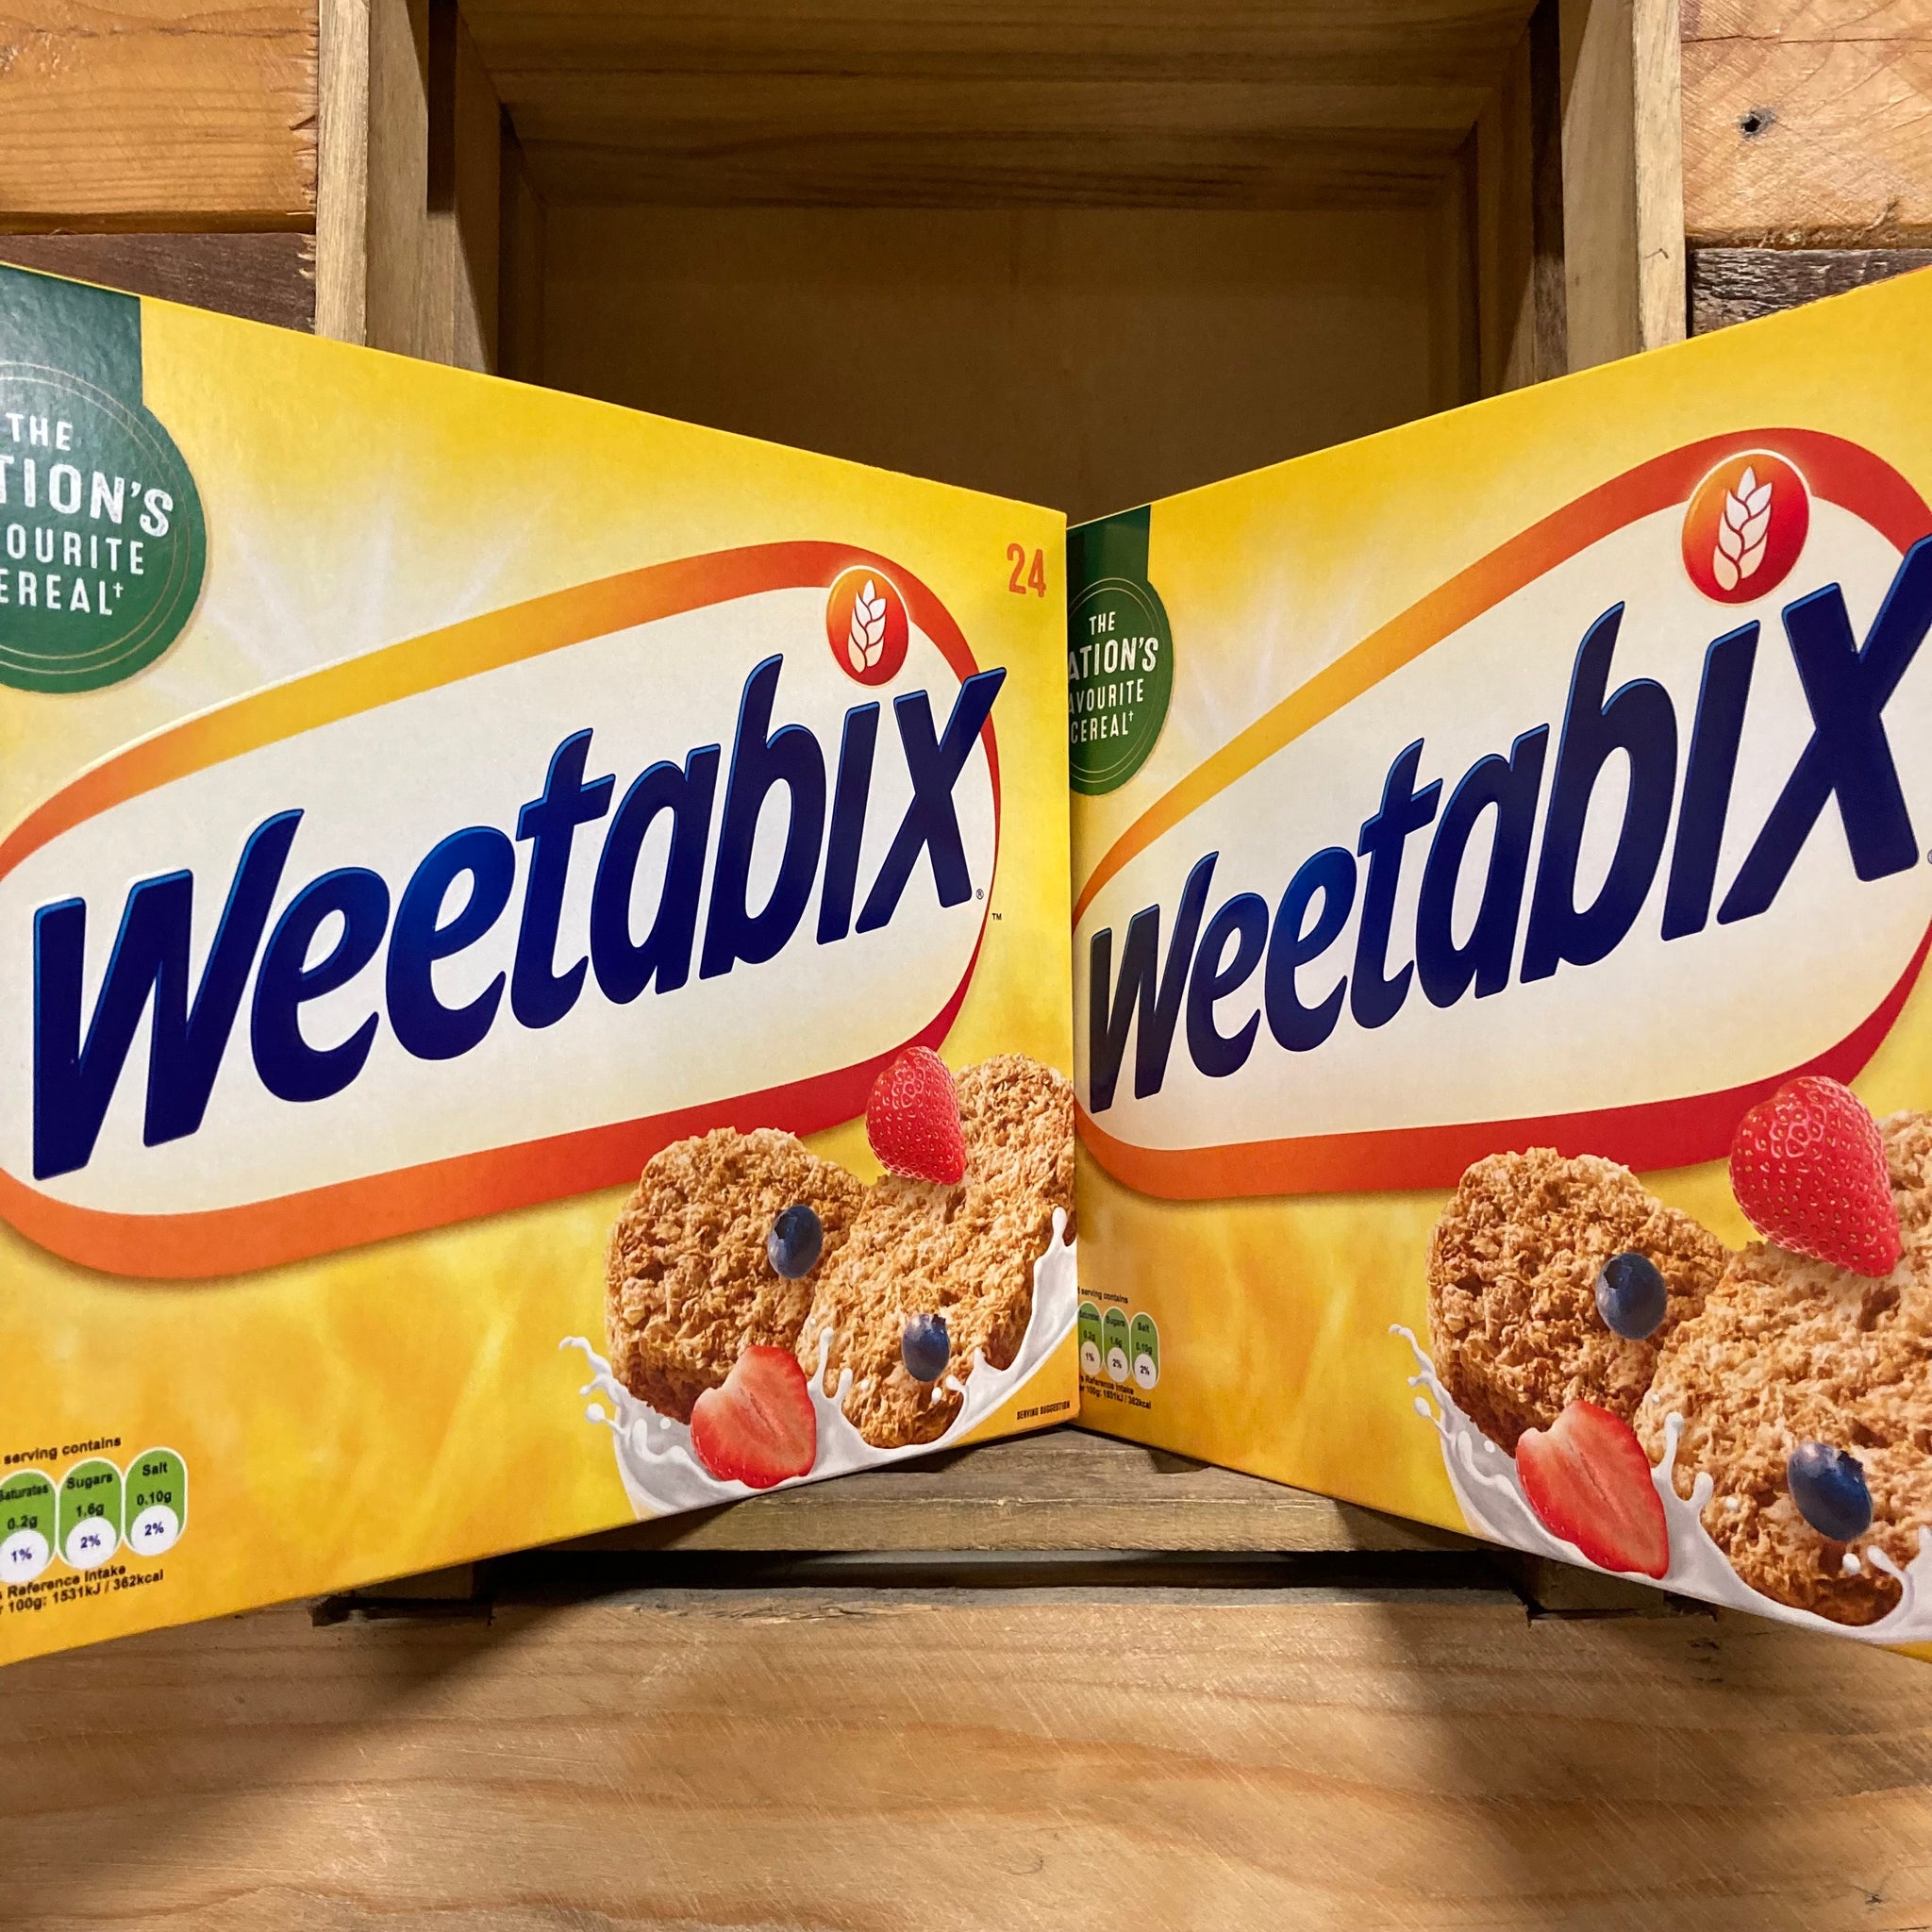 Weetabix Cereal 24 biscuits